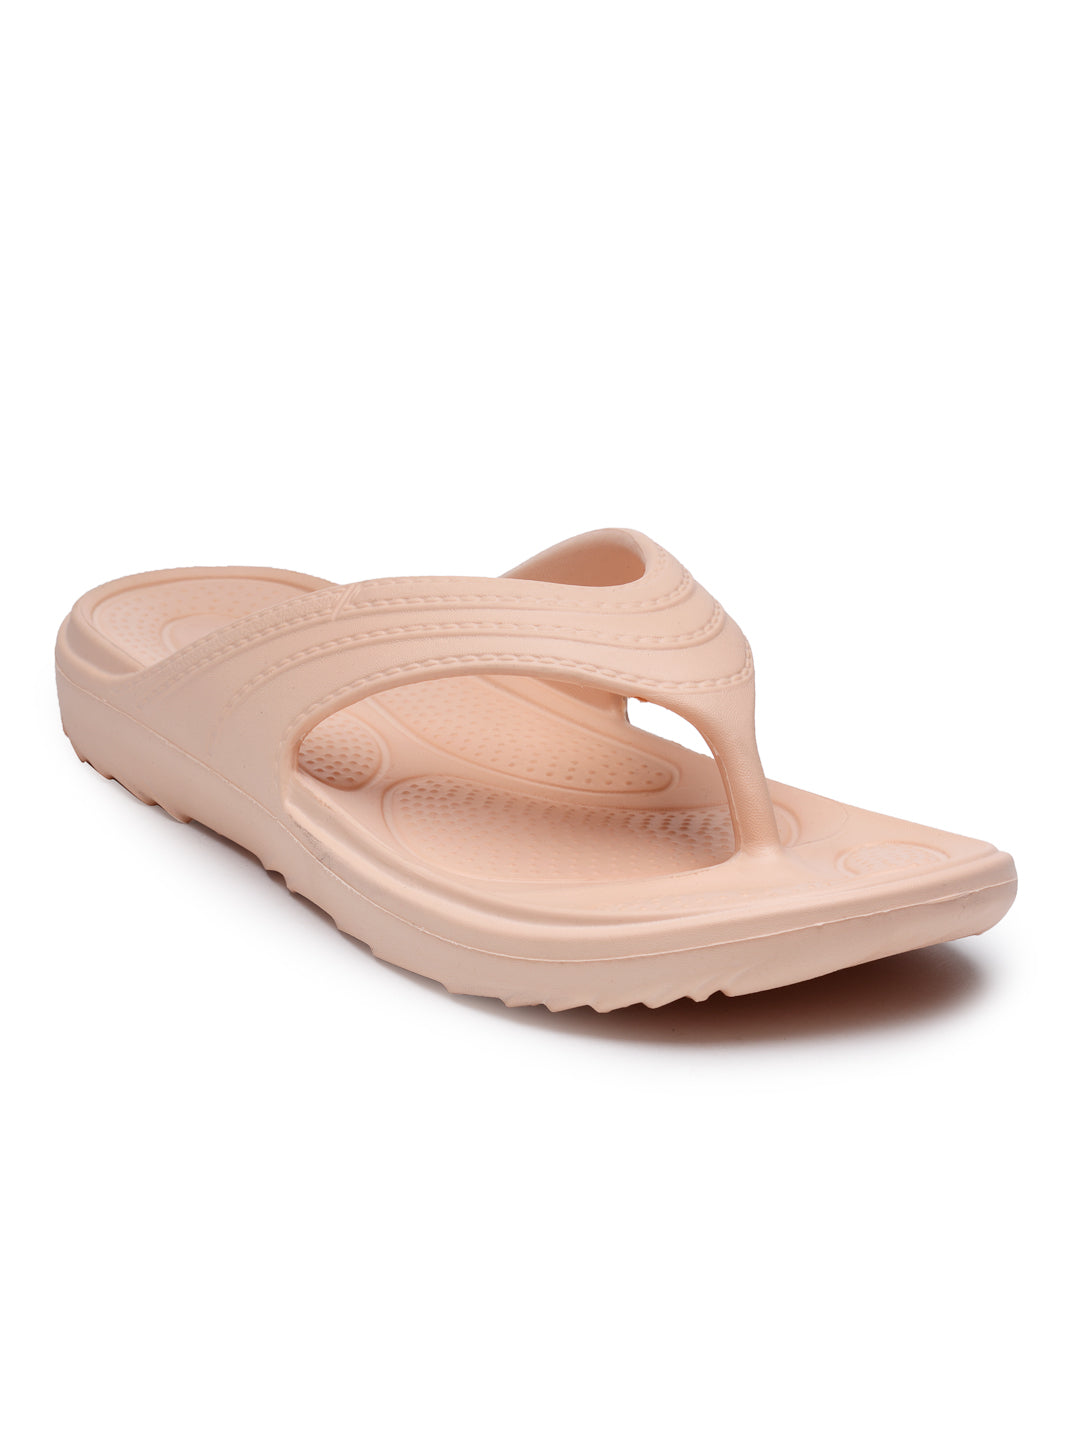 Peach Solid EVA Slip-On Slipper For Women